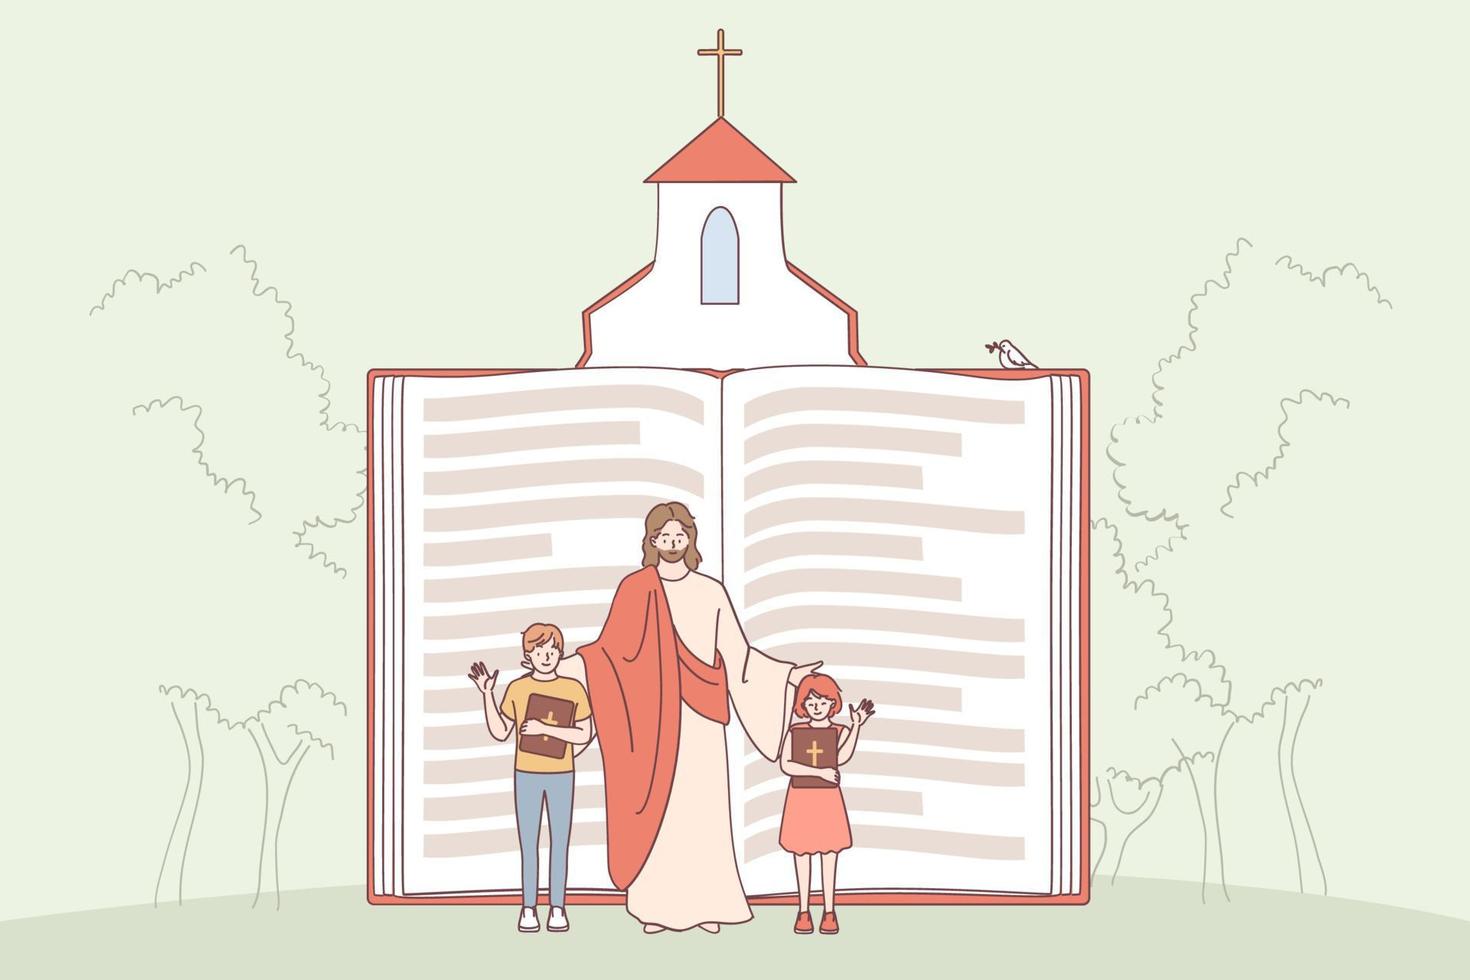 cristianesimo, religione, Bibbia concetto. enorme religioso libro con Gesù e bambini personaggi agitando loro mani mostrando importanza di religione vettore illustrazione